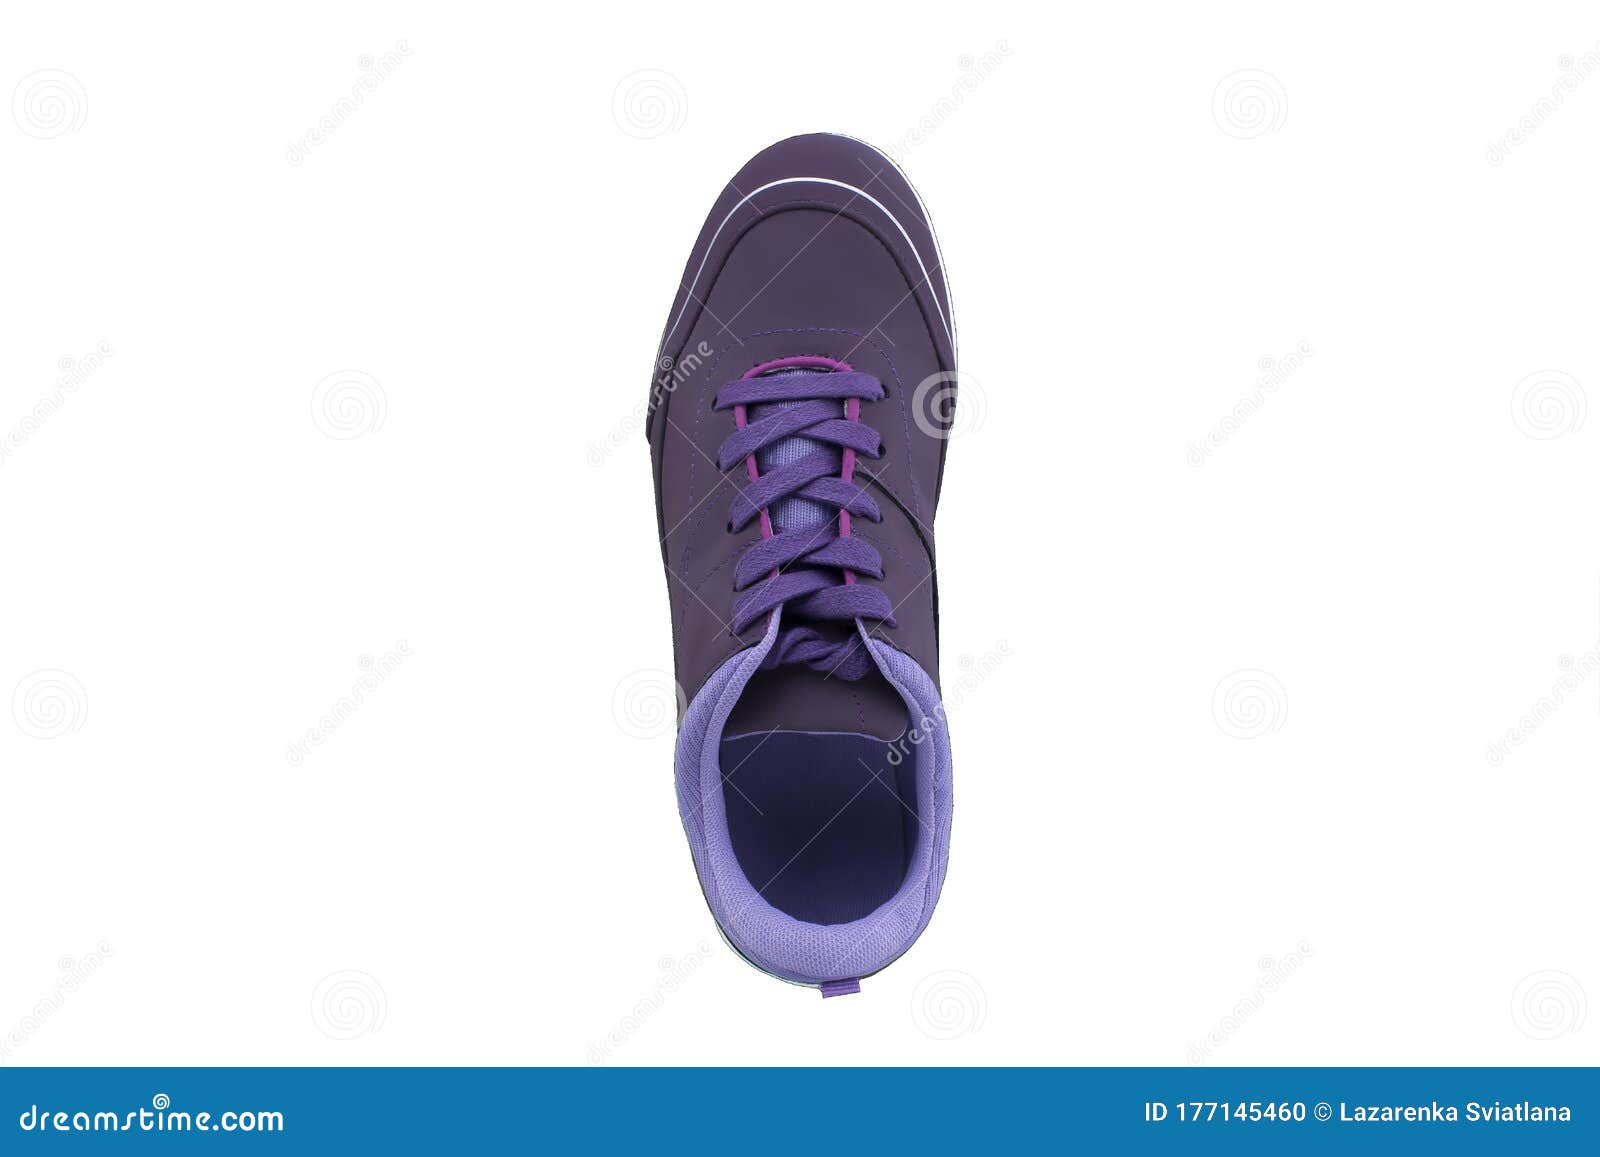 purple sole shoes